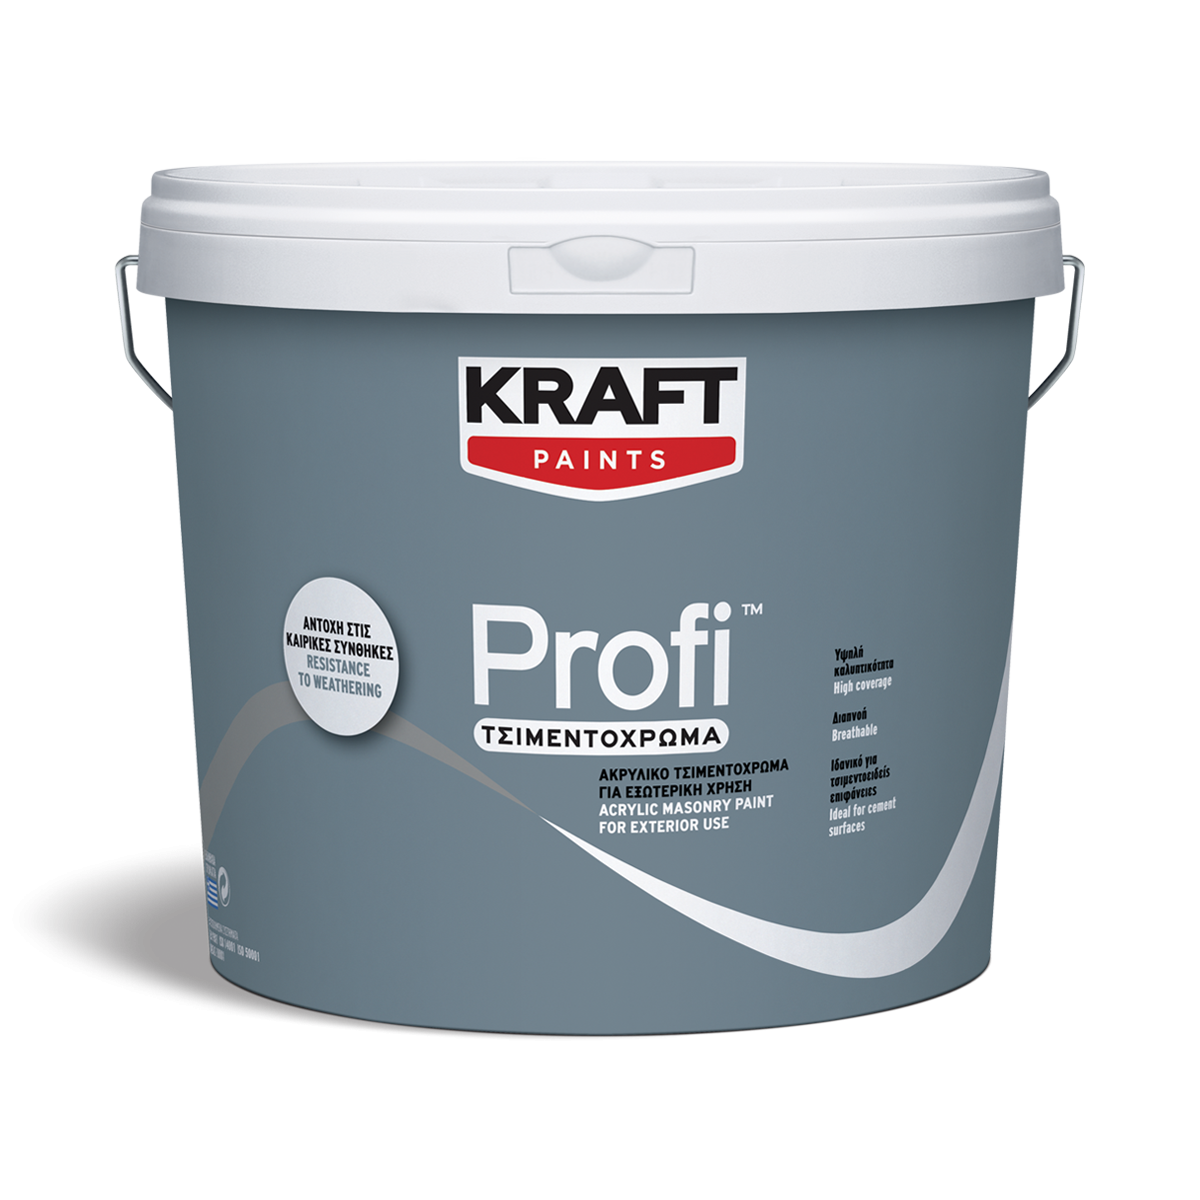 Ακρυλικό Τσιμεντόχρωμα Profi- Kraft Paints "Γκρι" 3L